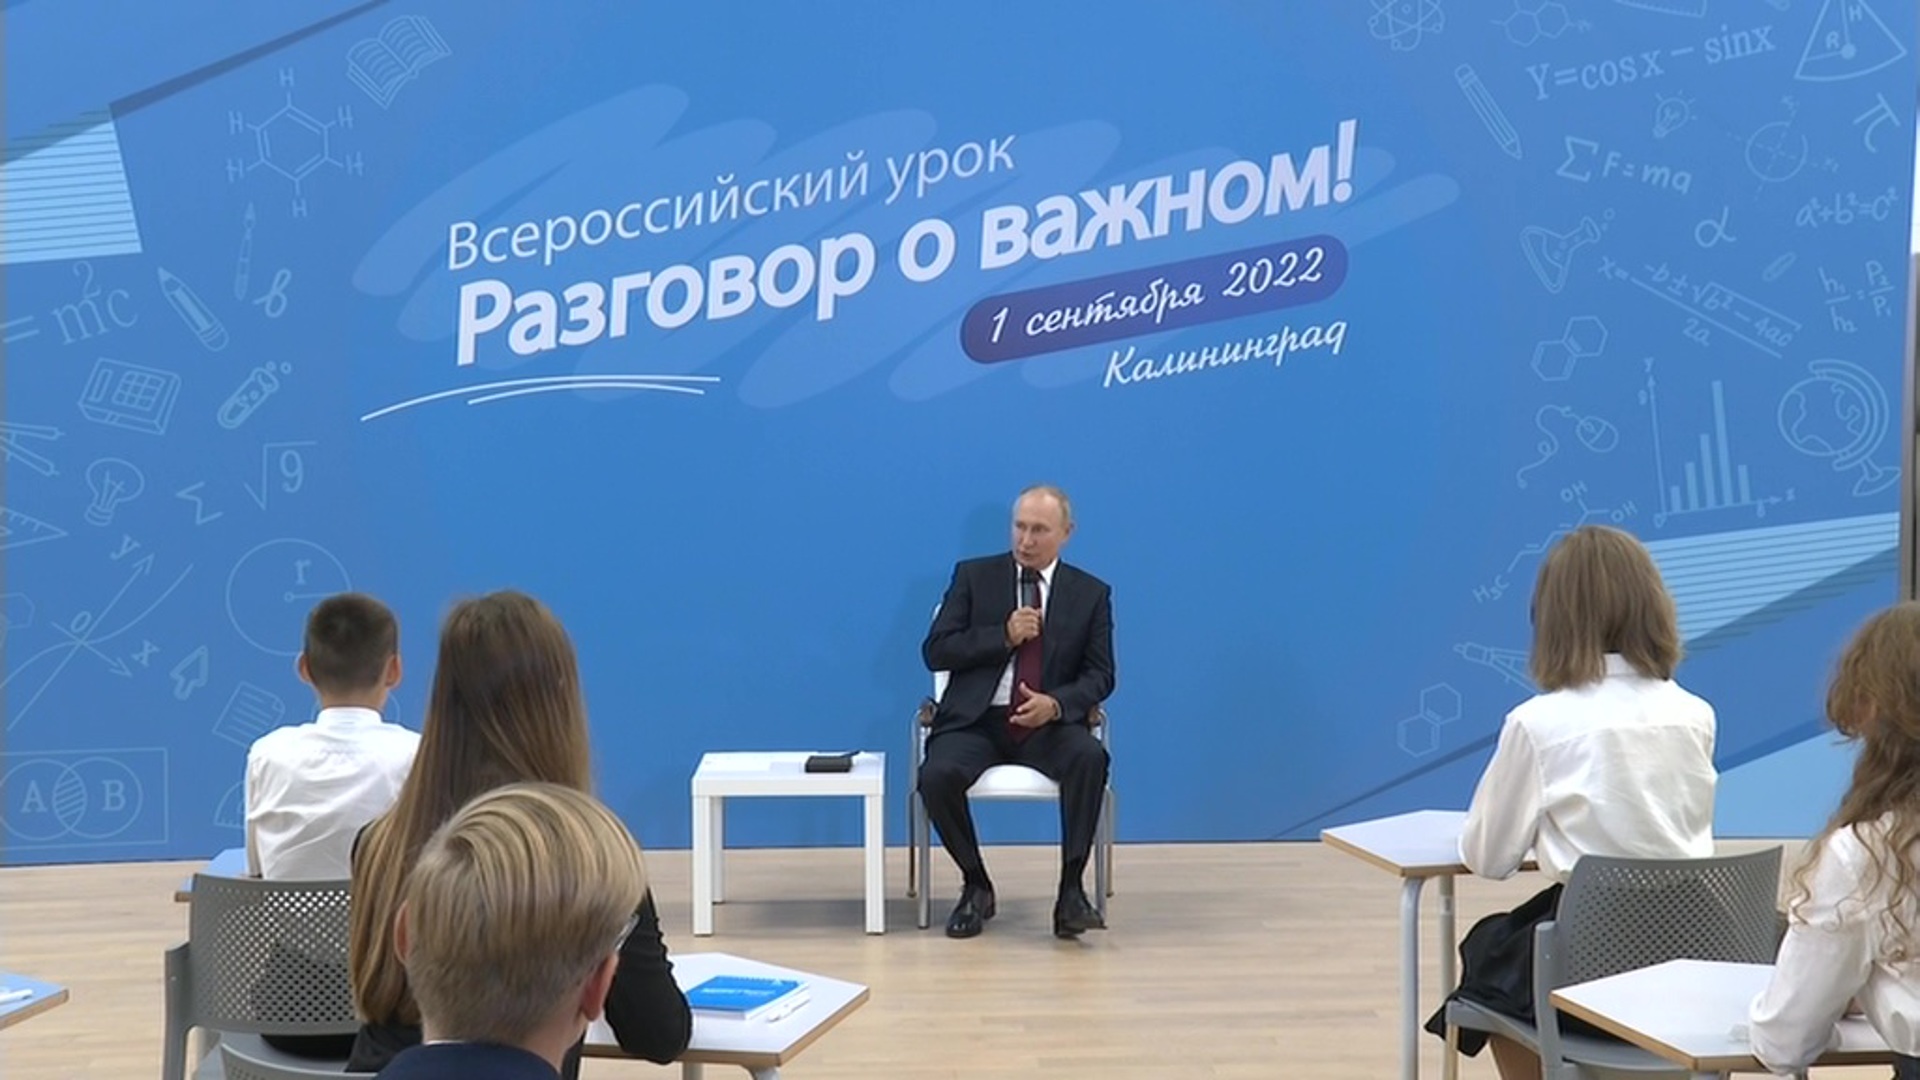 Время покажет 04.04 2024. Открытый урок разговоры о важном с Владимиром Путиным. Разговор о важном с президентом 1 сентября 2022. Разговоры о важном.